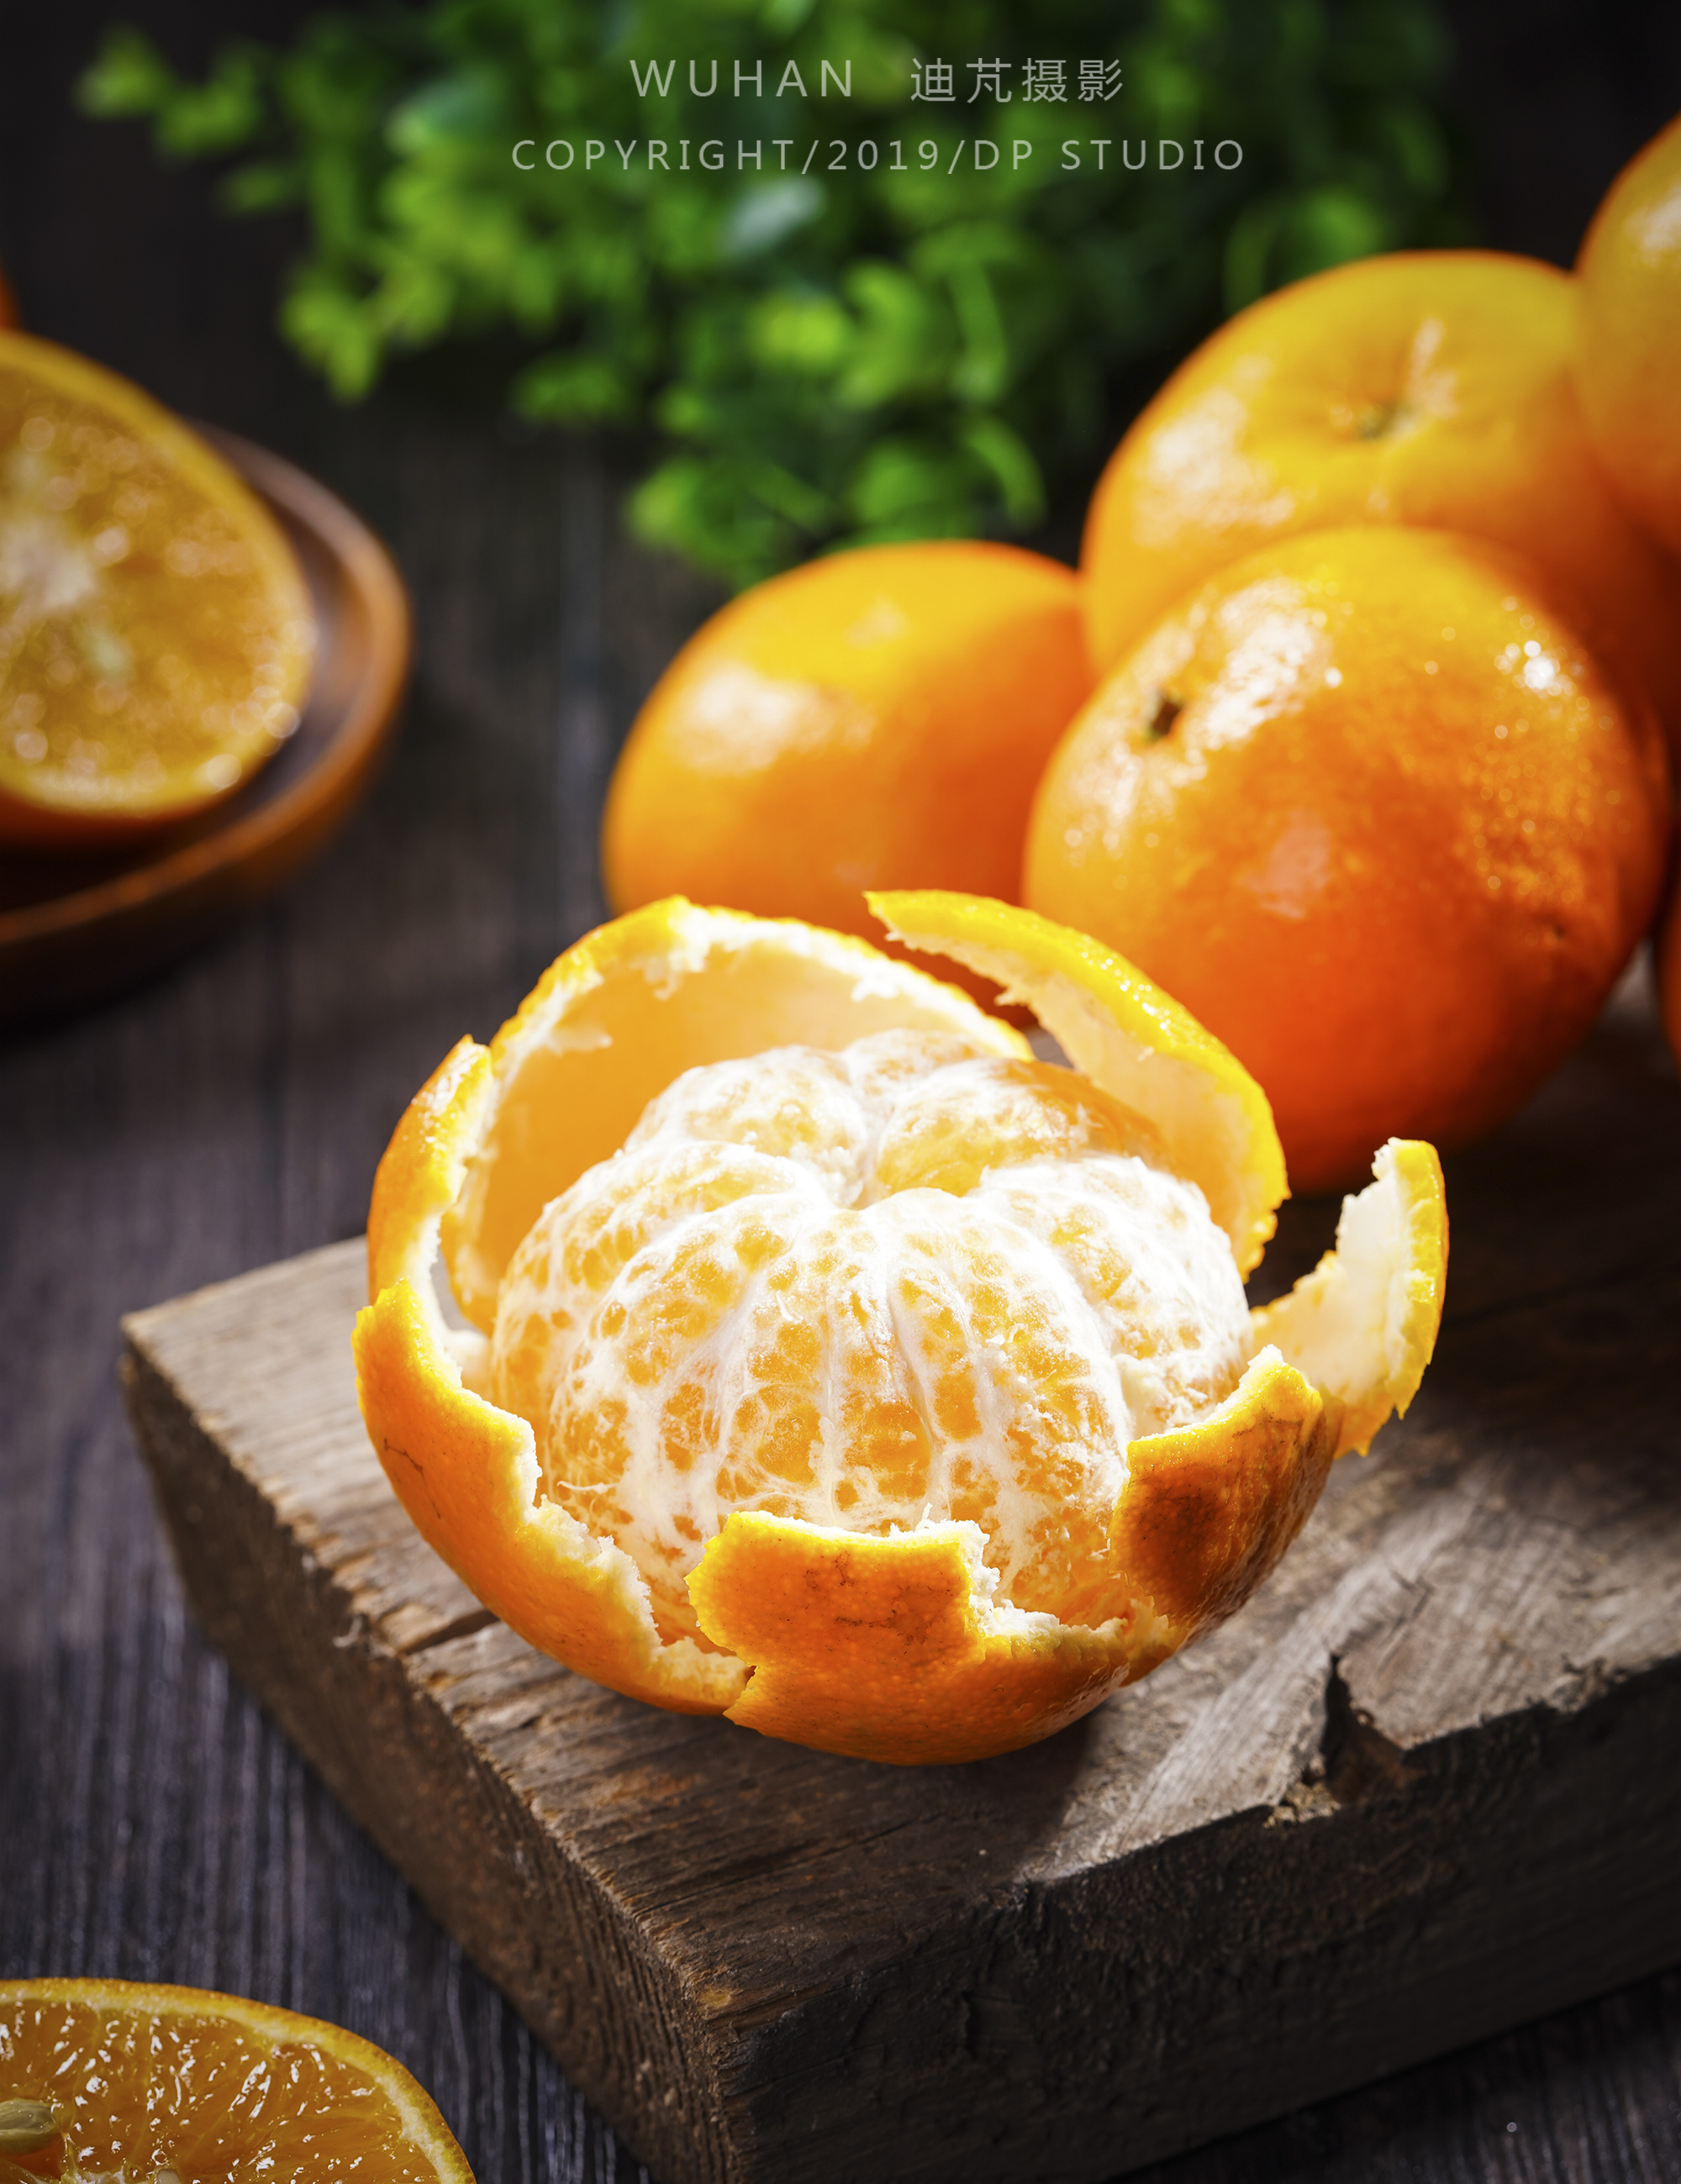 沃柑和橙子哪个营养好 (沃柑和橙子哪个好吃 沃柑和橙子可以一起吃吗)